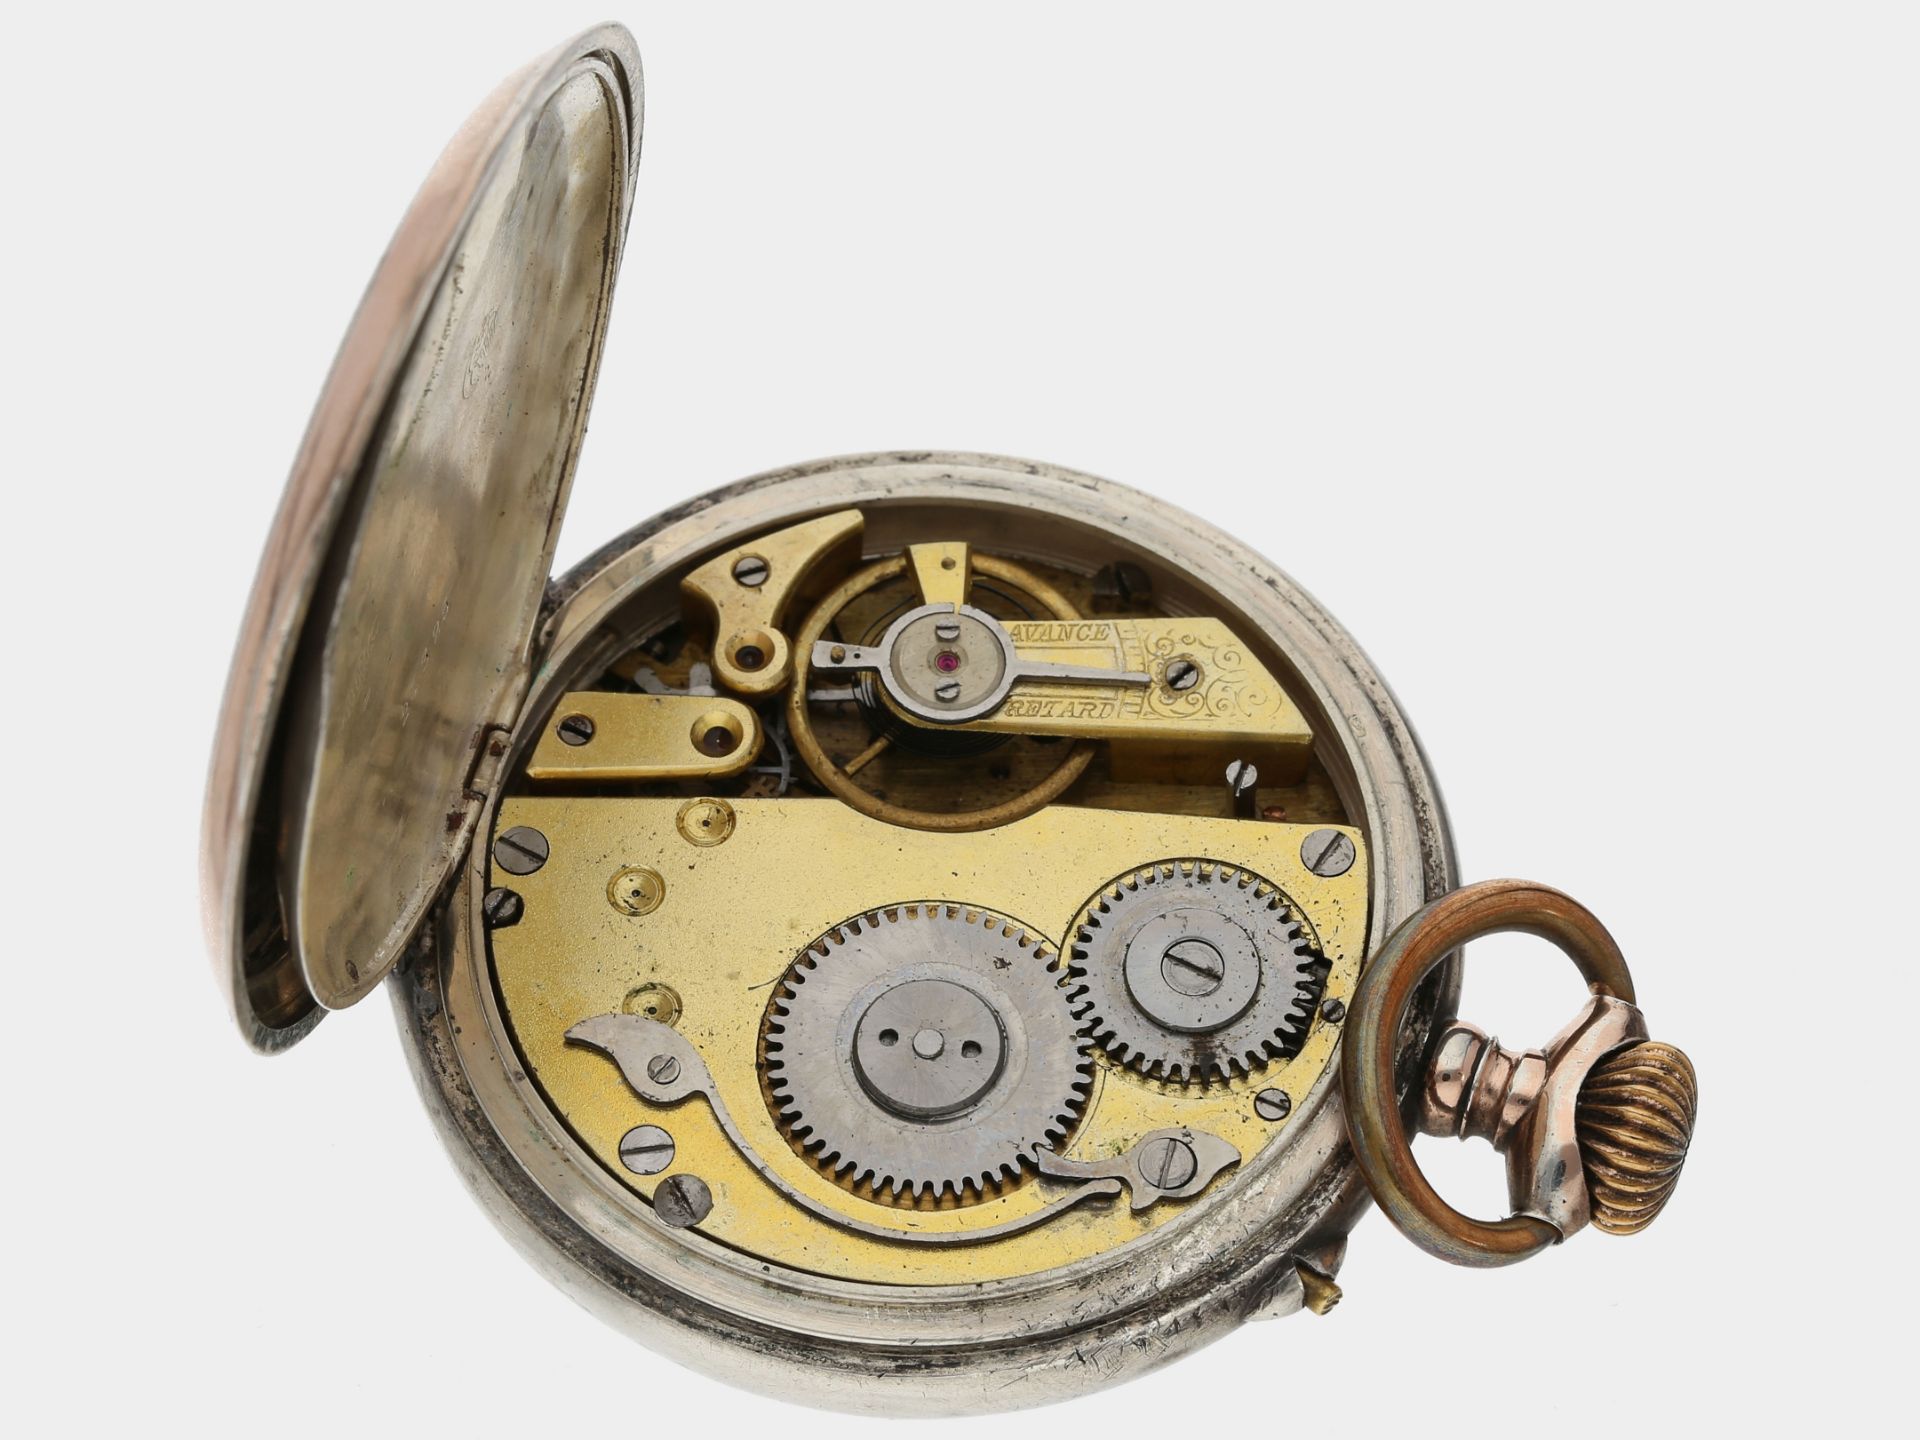 Taschenuhr: komplizierte astronomische Taschenuhr mit Vollkalender und Mondphase, Roskopf ca. 1900 - Bild 4 aus 4